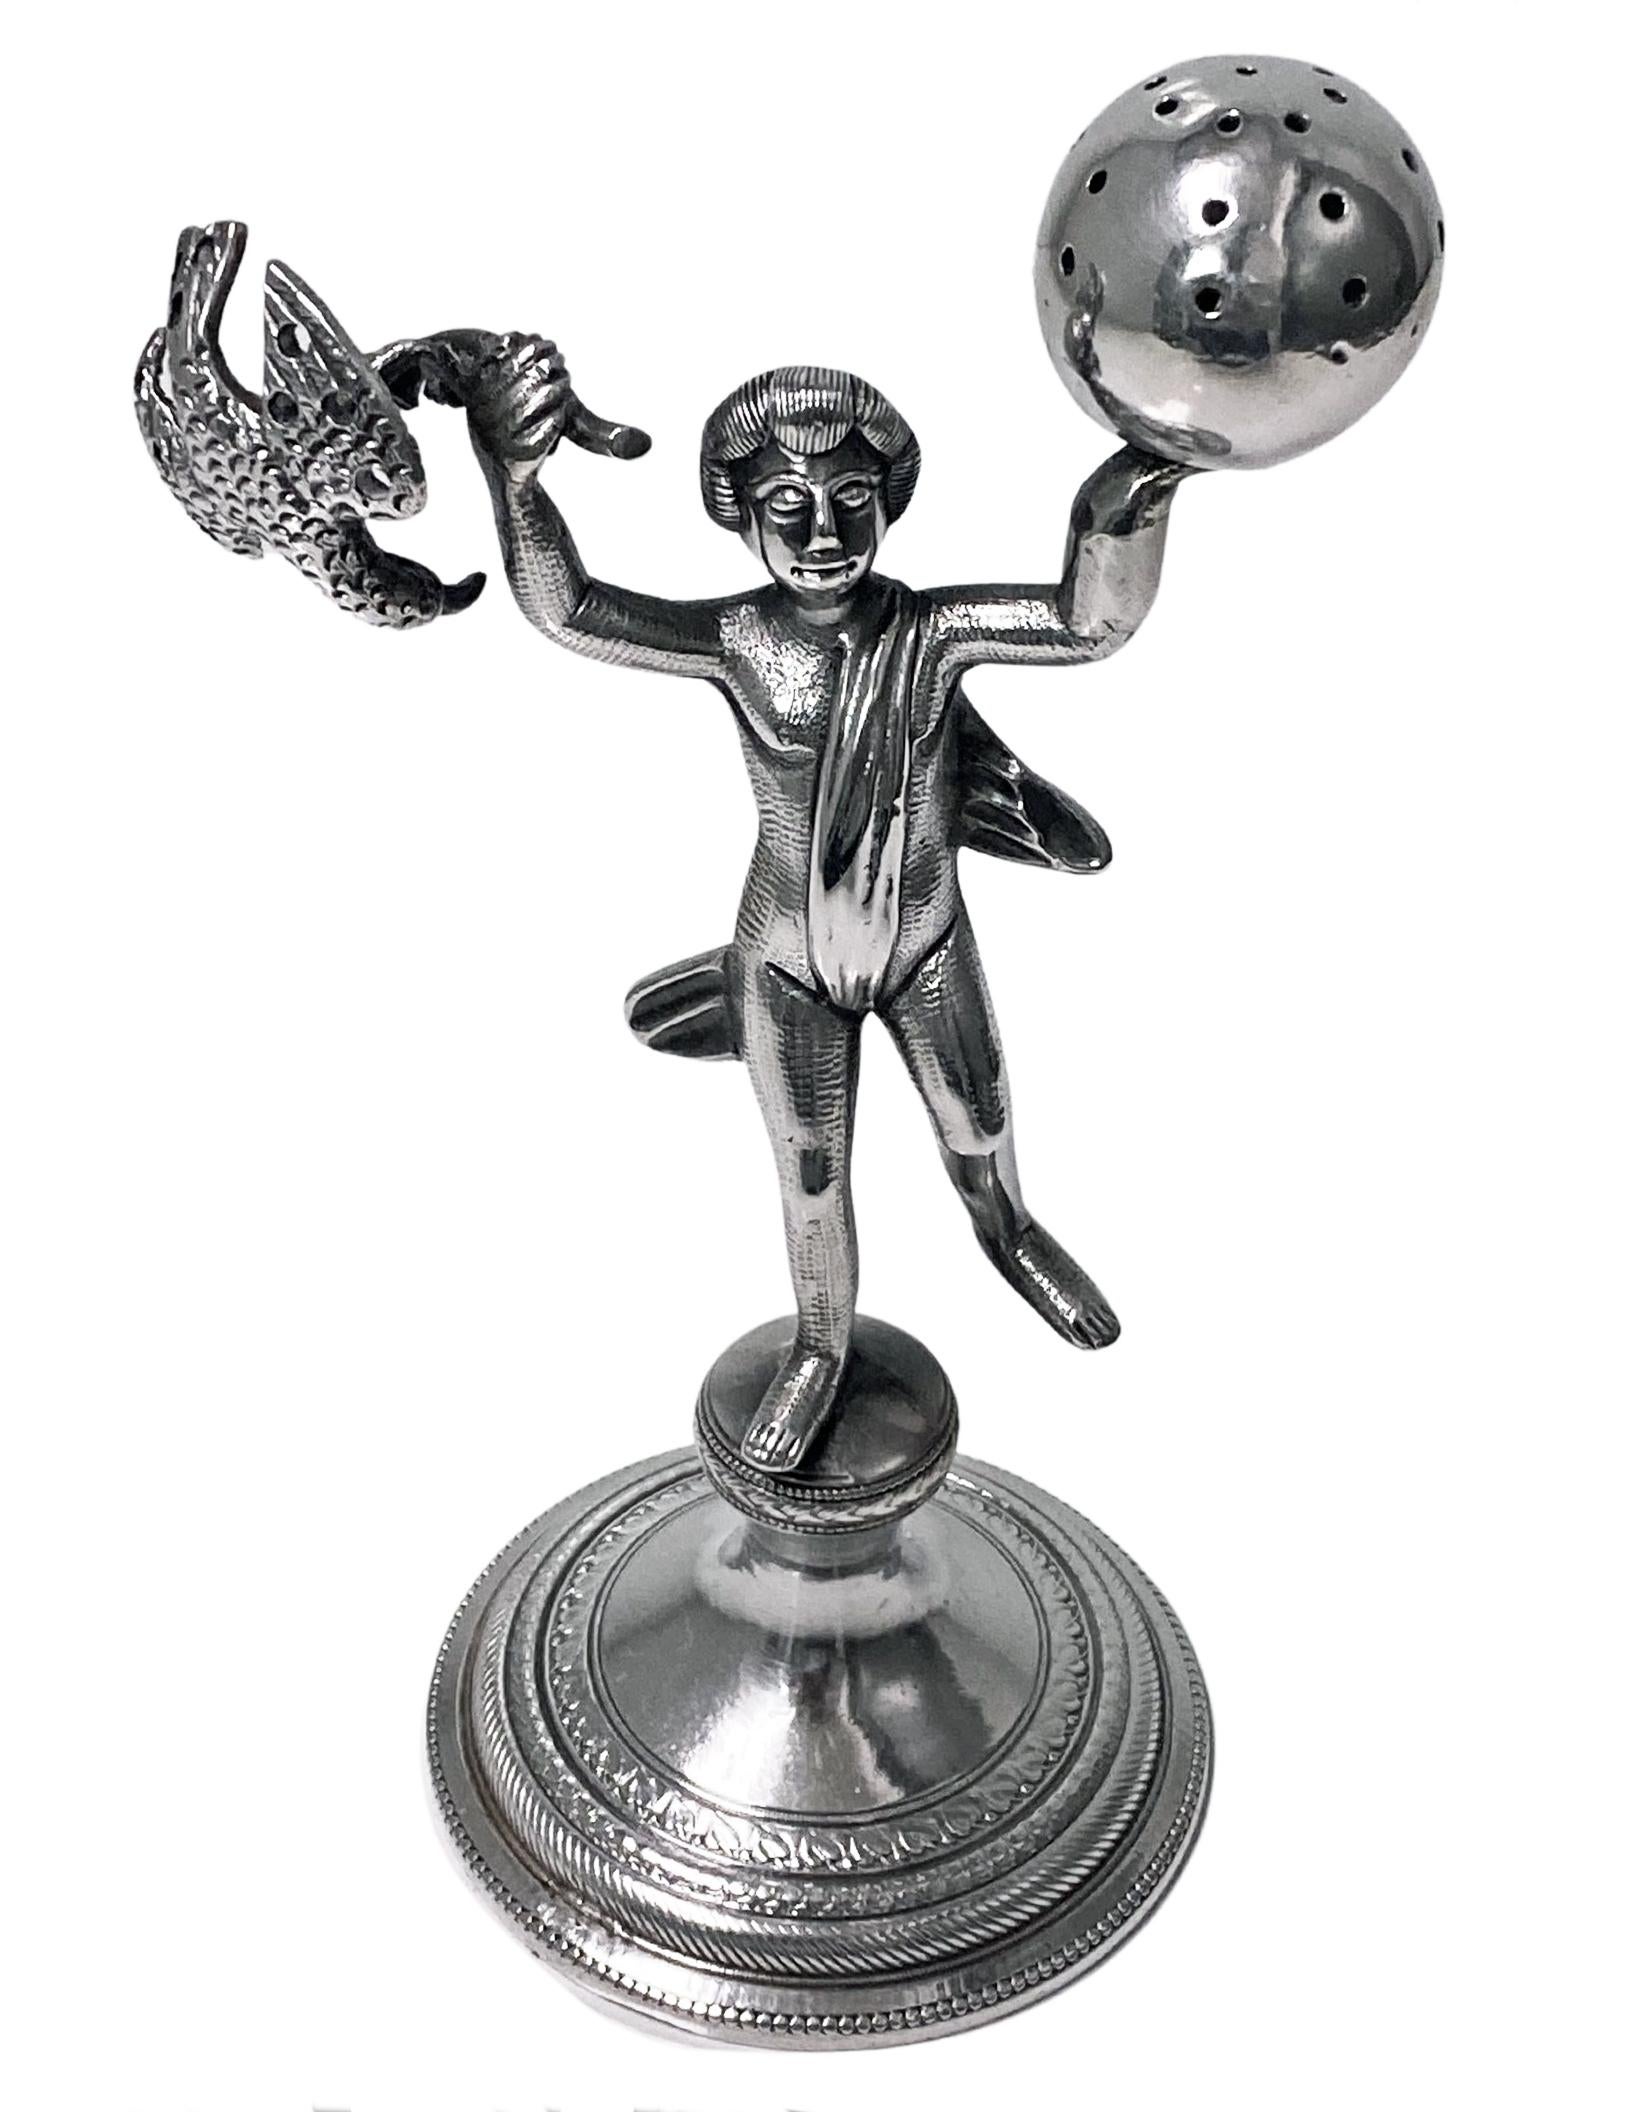 Antiker Zahnstocher- oder Cocktailstäbchenhalter aus Silber, Brasilien oder Portugal um 1850. Der Halter in Form einer exotisch drapierten Figur, die in der einen Hand eine Weltkugel und in der anderen einen Adler hält, steht auf einem geknickten